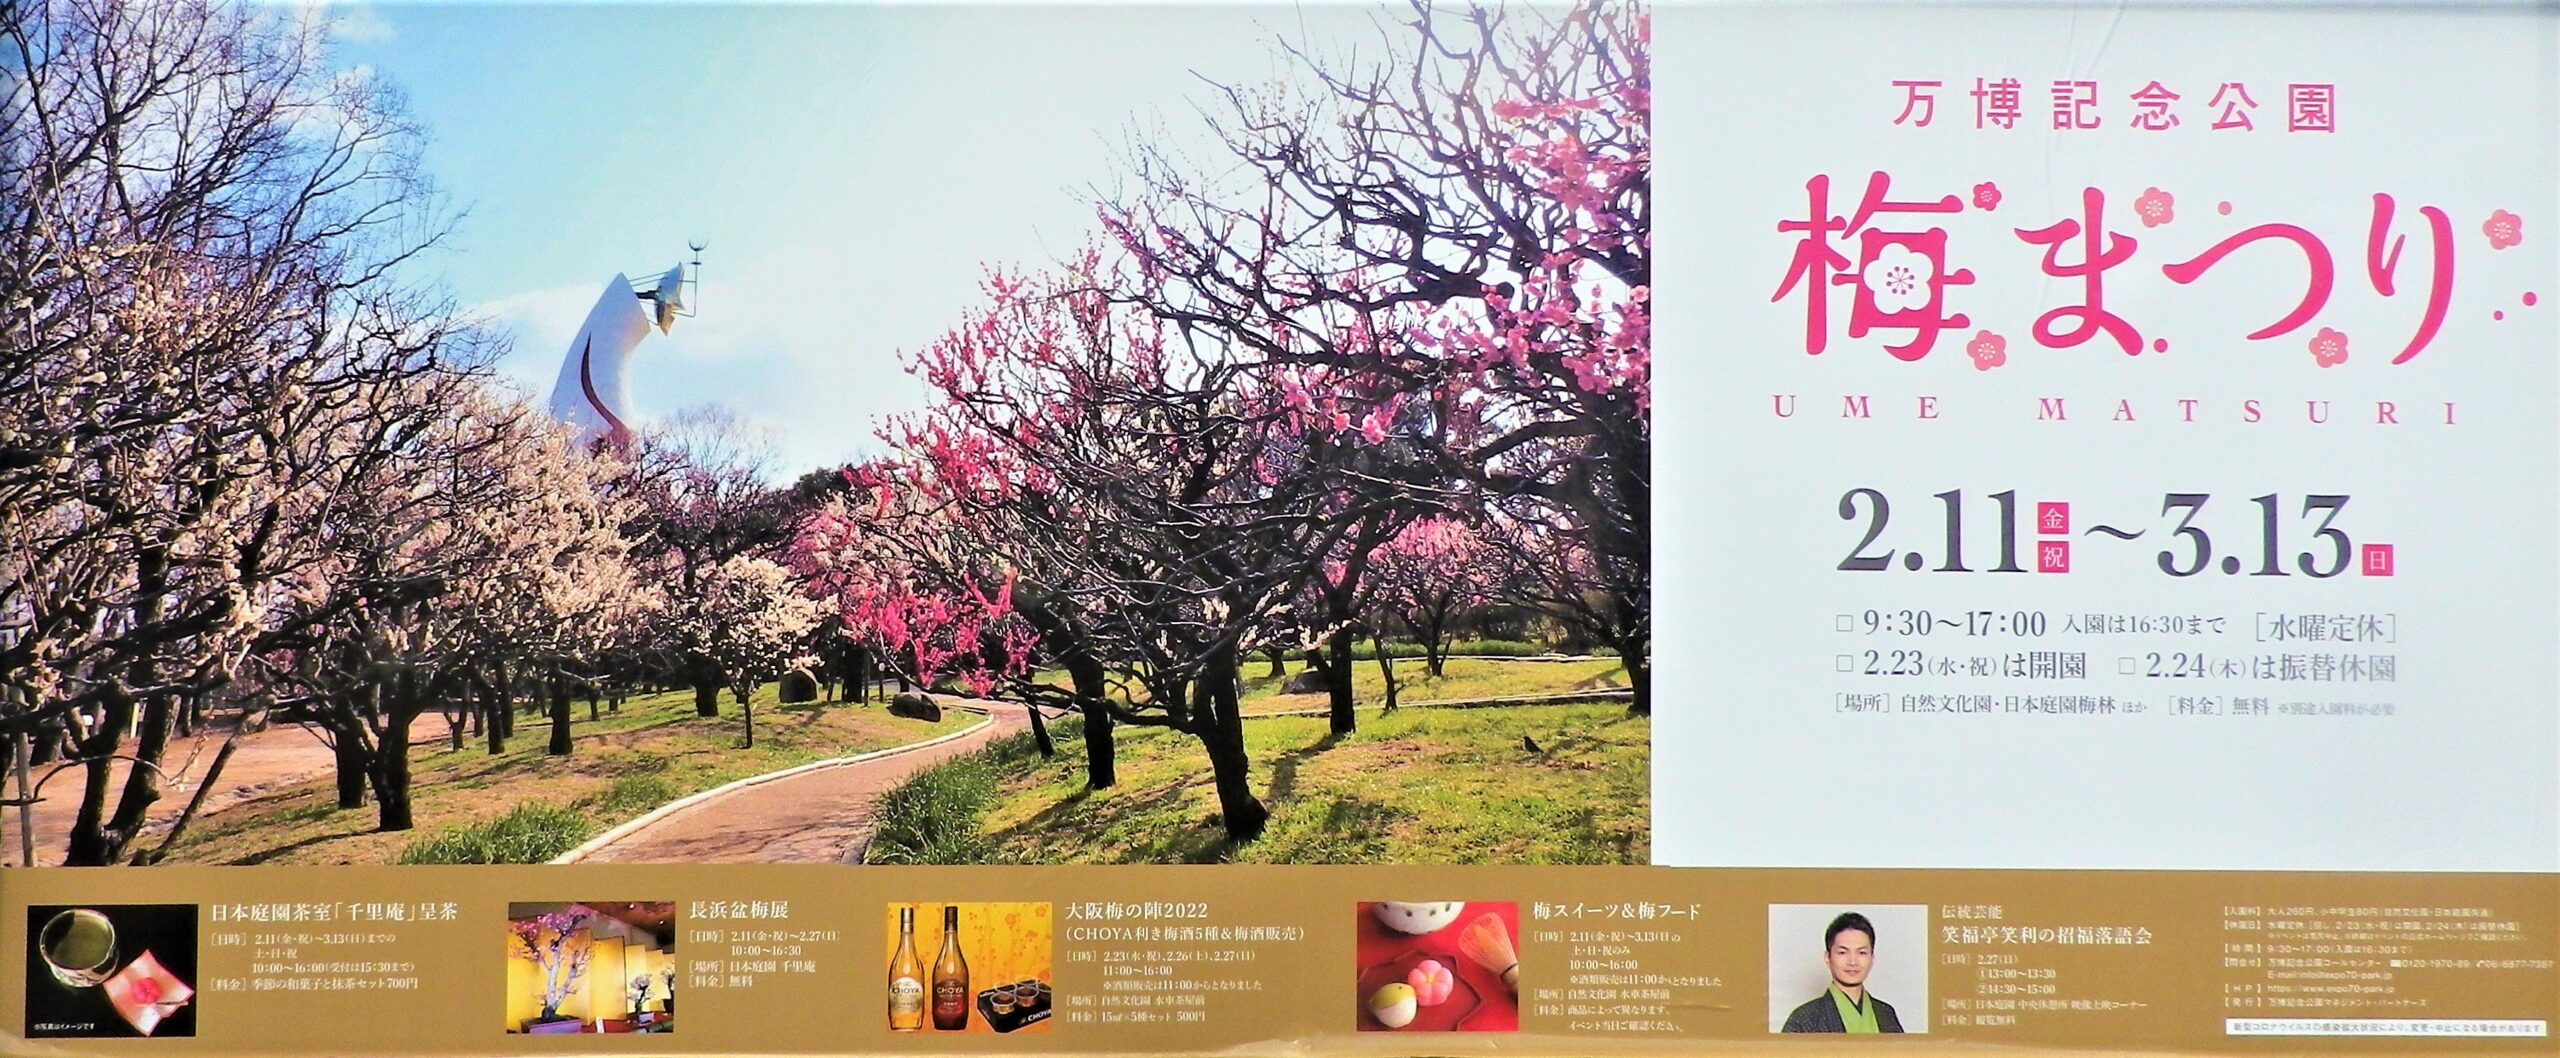 万博記念公園で 梅まつり が2 11 祝 3 13 日 開催中 満開の梅の花を愛でながら 春の一日を過ごしてみませんか ジモトコ吹田